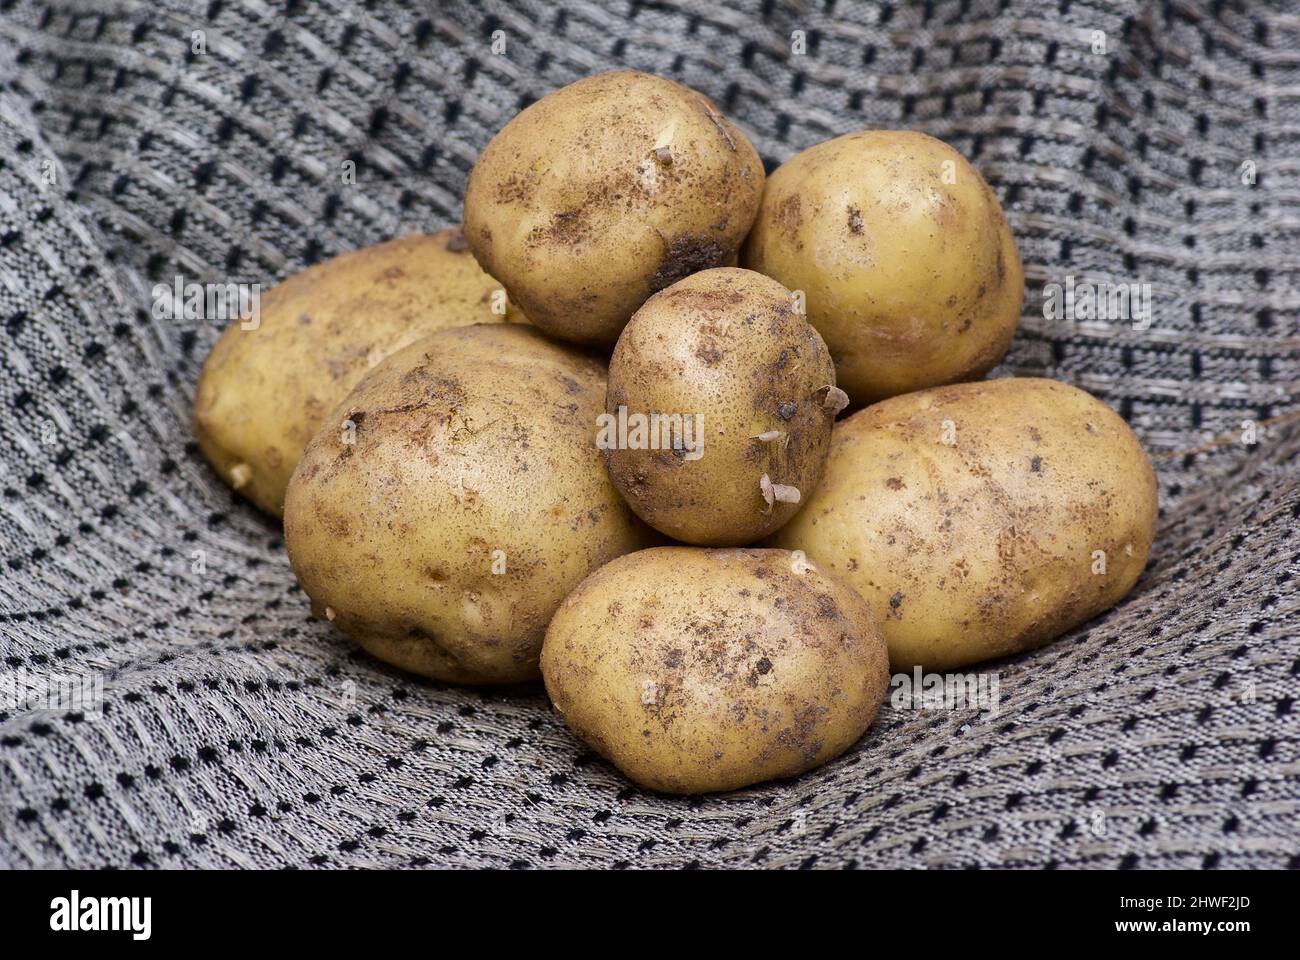 Haufen von zusammengerafften neuen Kartoffeln, die im Sommer auf einem grauen Leinentuch liegen. Stockfoto